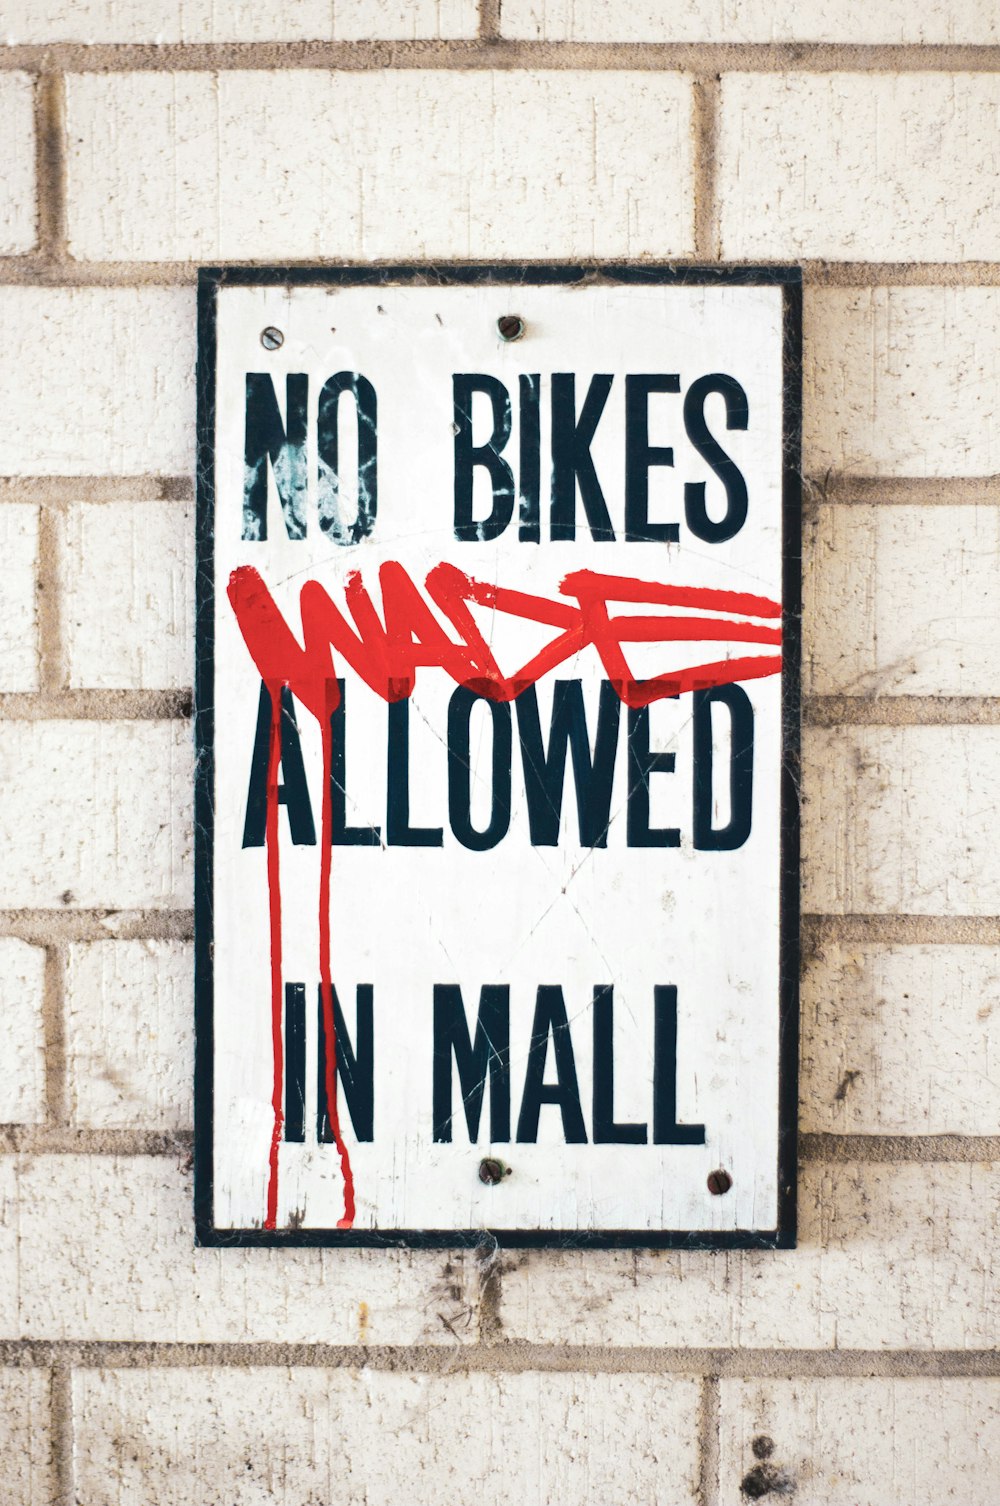 Kein Waten von Fahrrädern in der Beschilderung des Einkaufszentrums erlaubt